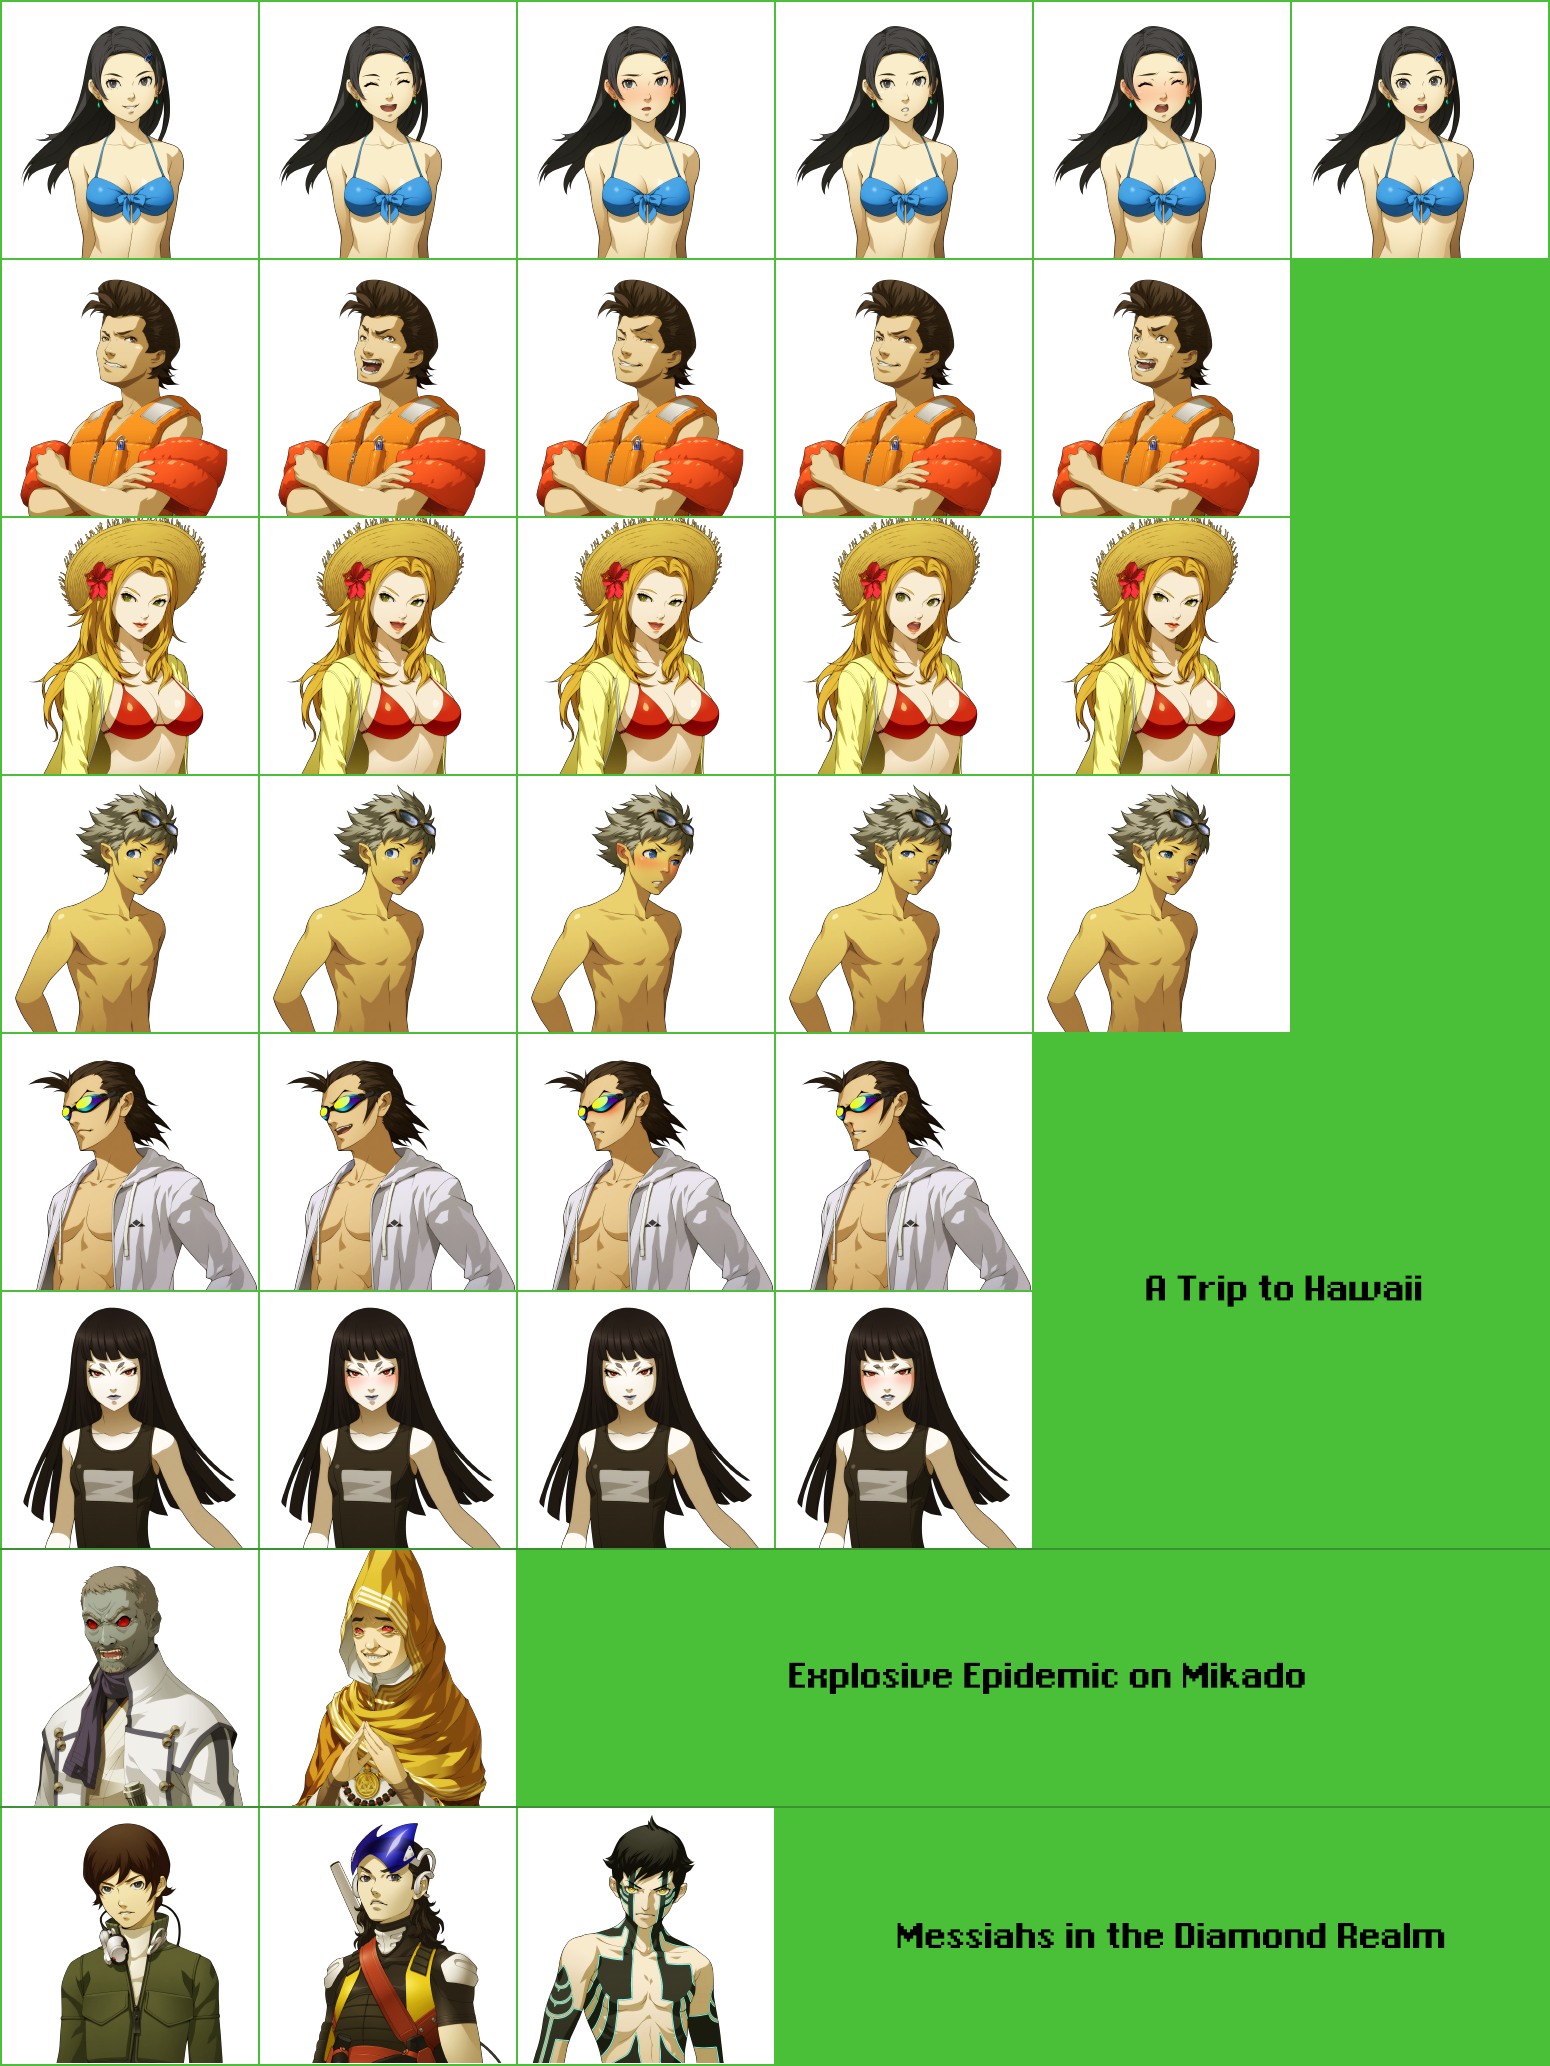 Shin Megami Tensei IV: Apocalypse - DLC Portraits